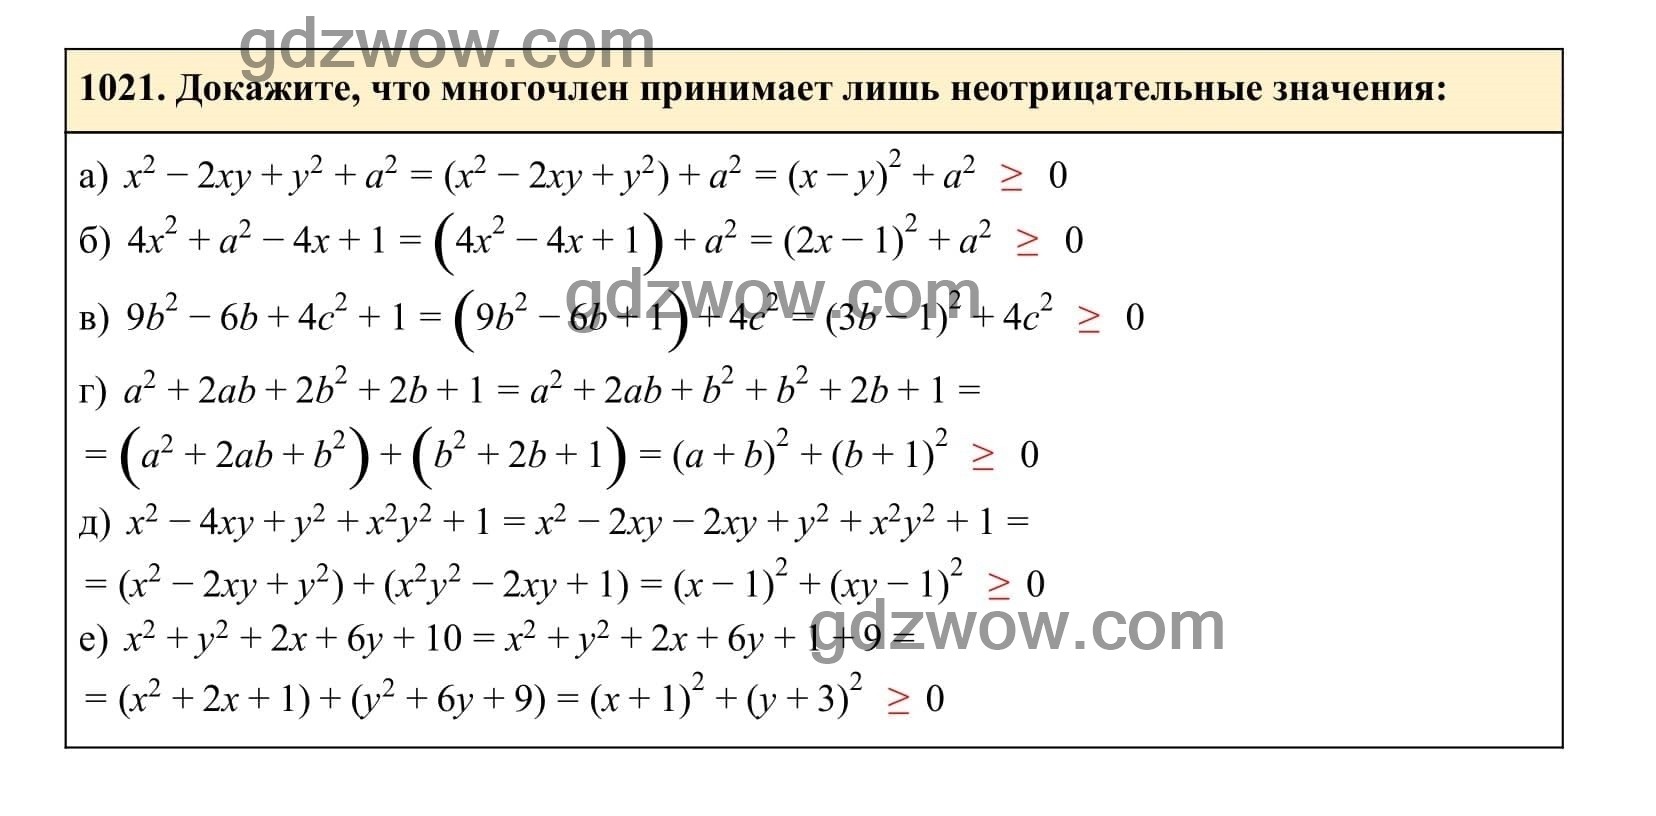 Упражнение 1021 - ГДЗ по Алгебре 7 класс Учебник Макарычев (решебник) - GDZwow